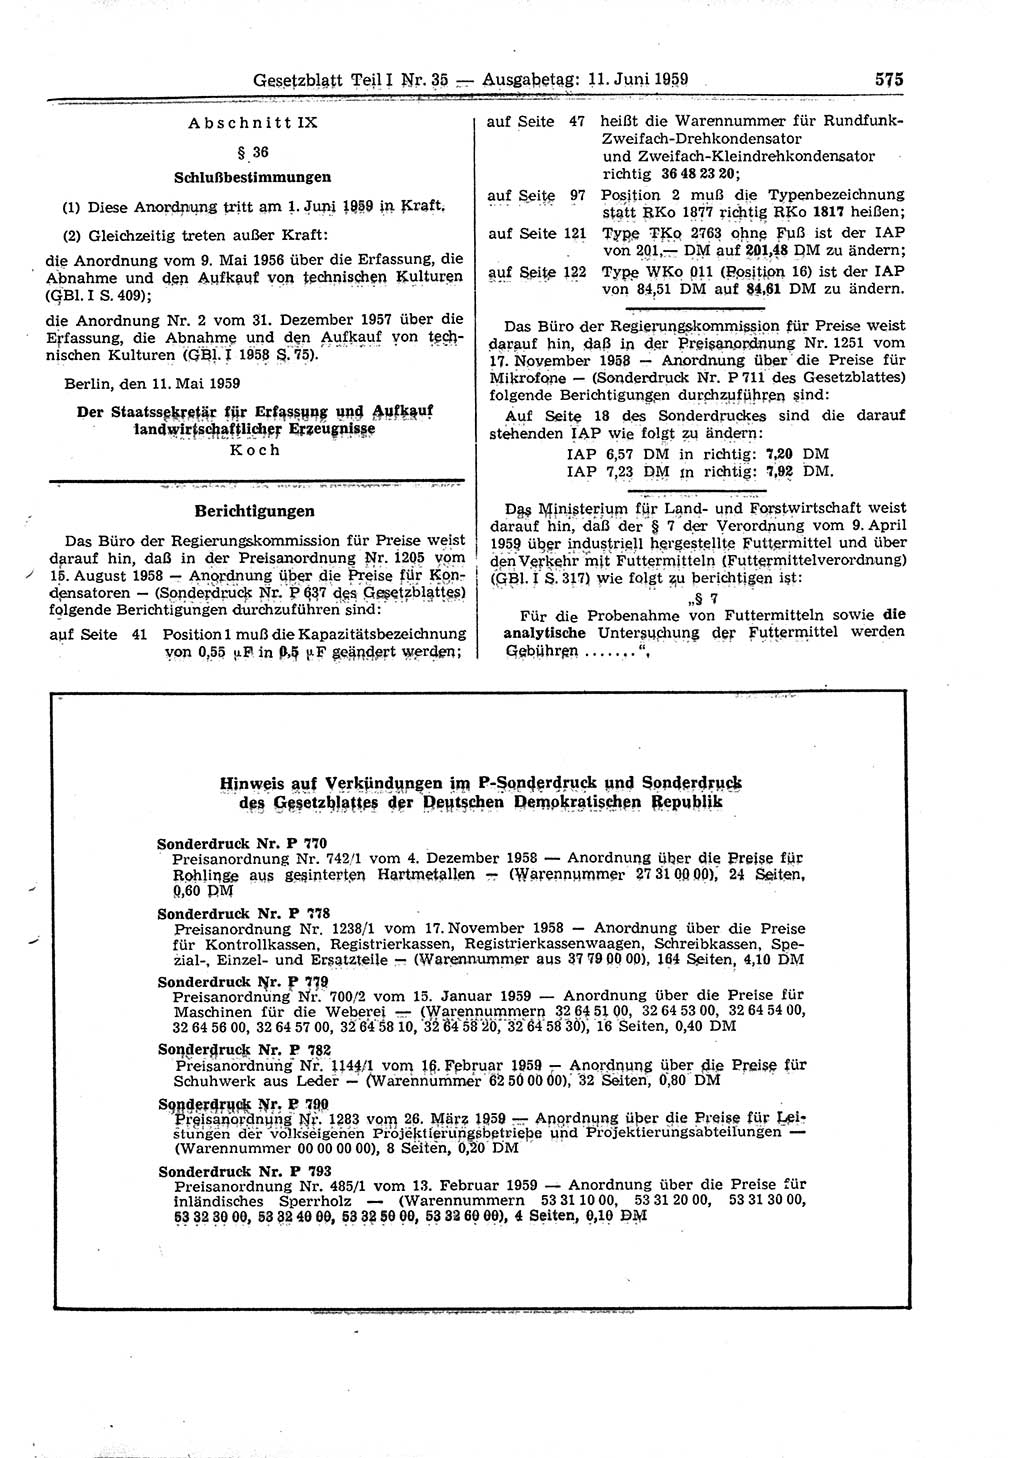 Gesetzblatt (GBl.) der Deutschen Demokratischen Republik (DDR) Teil Ⅰ 1959, Seite 575 (GBl. DDR Ⅰ 1959, S. 575)